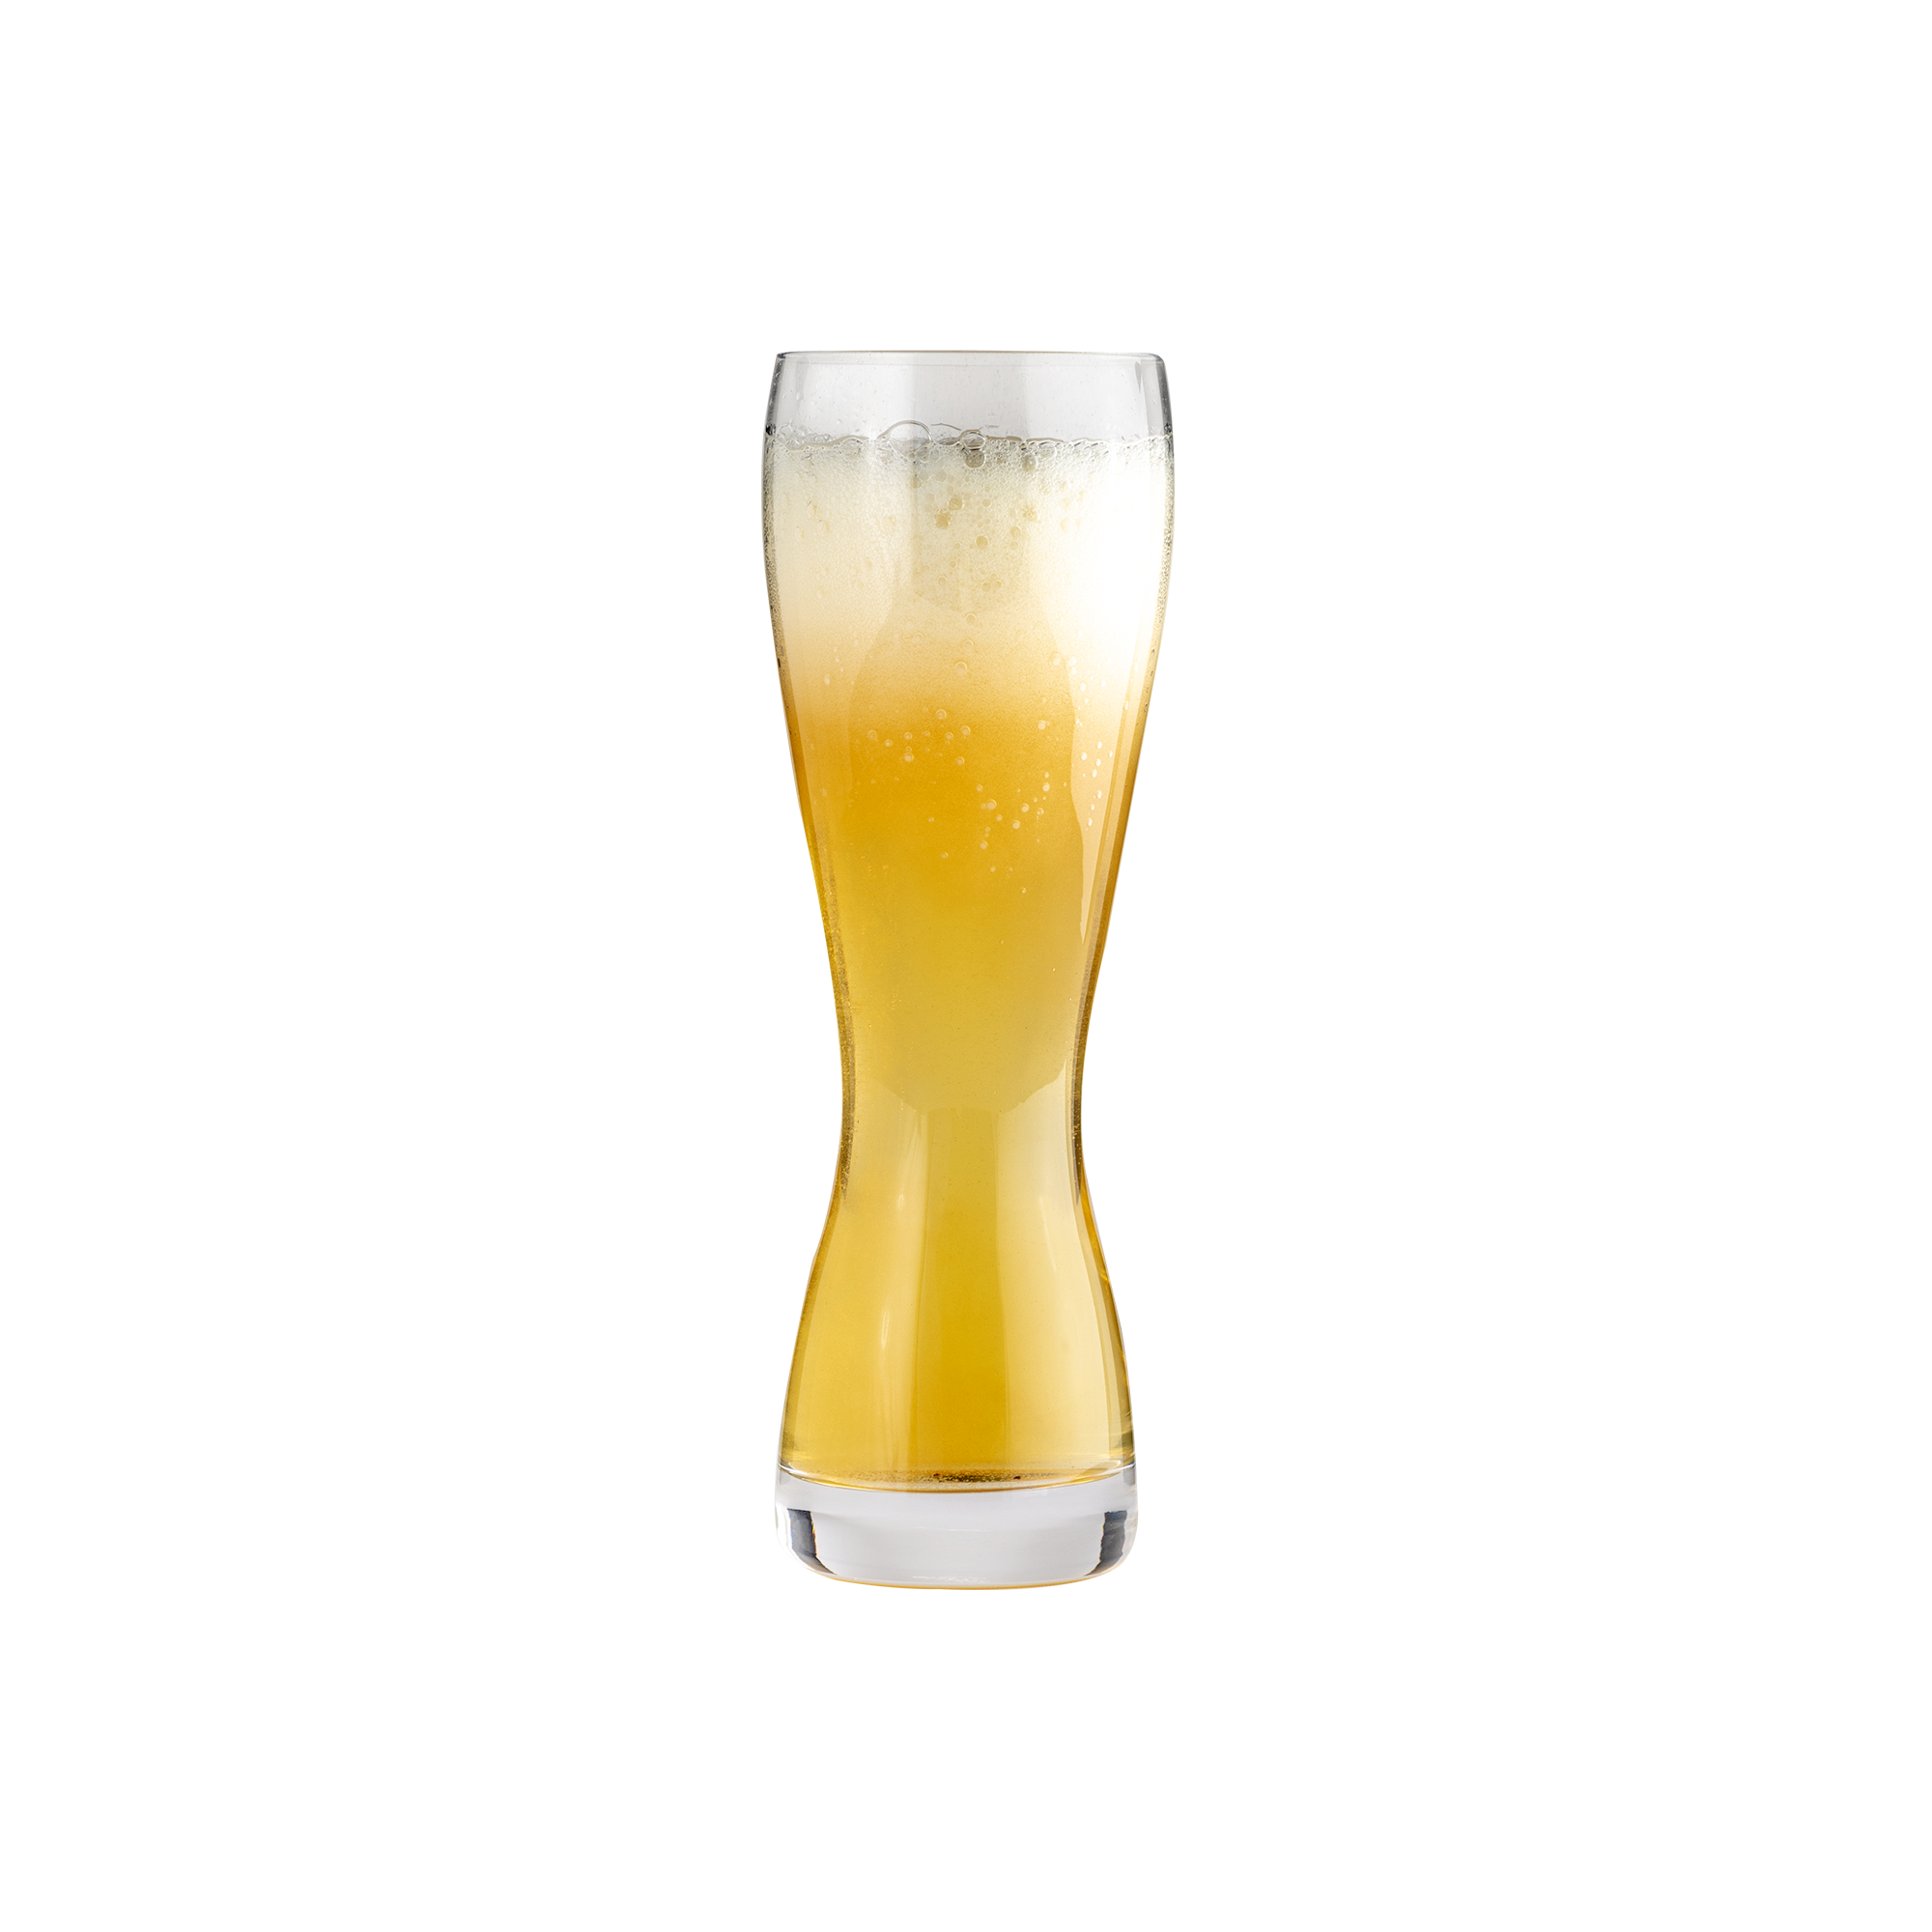 Weizenbier Beer Glass